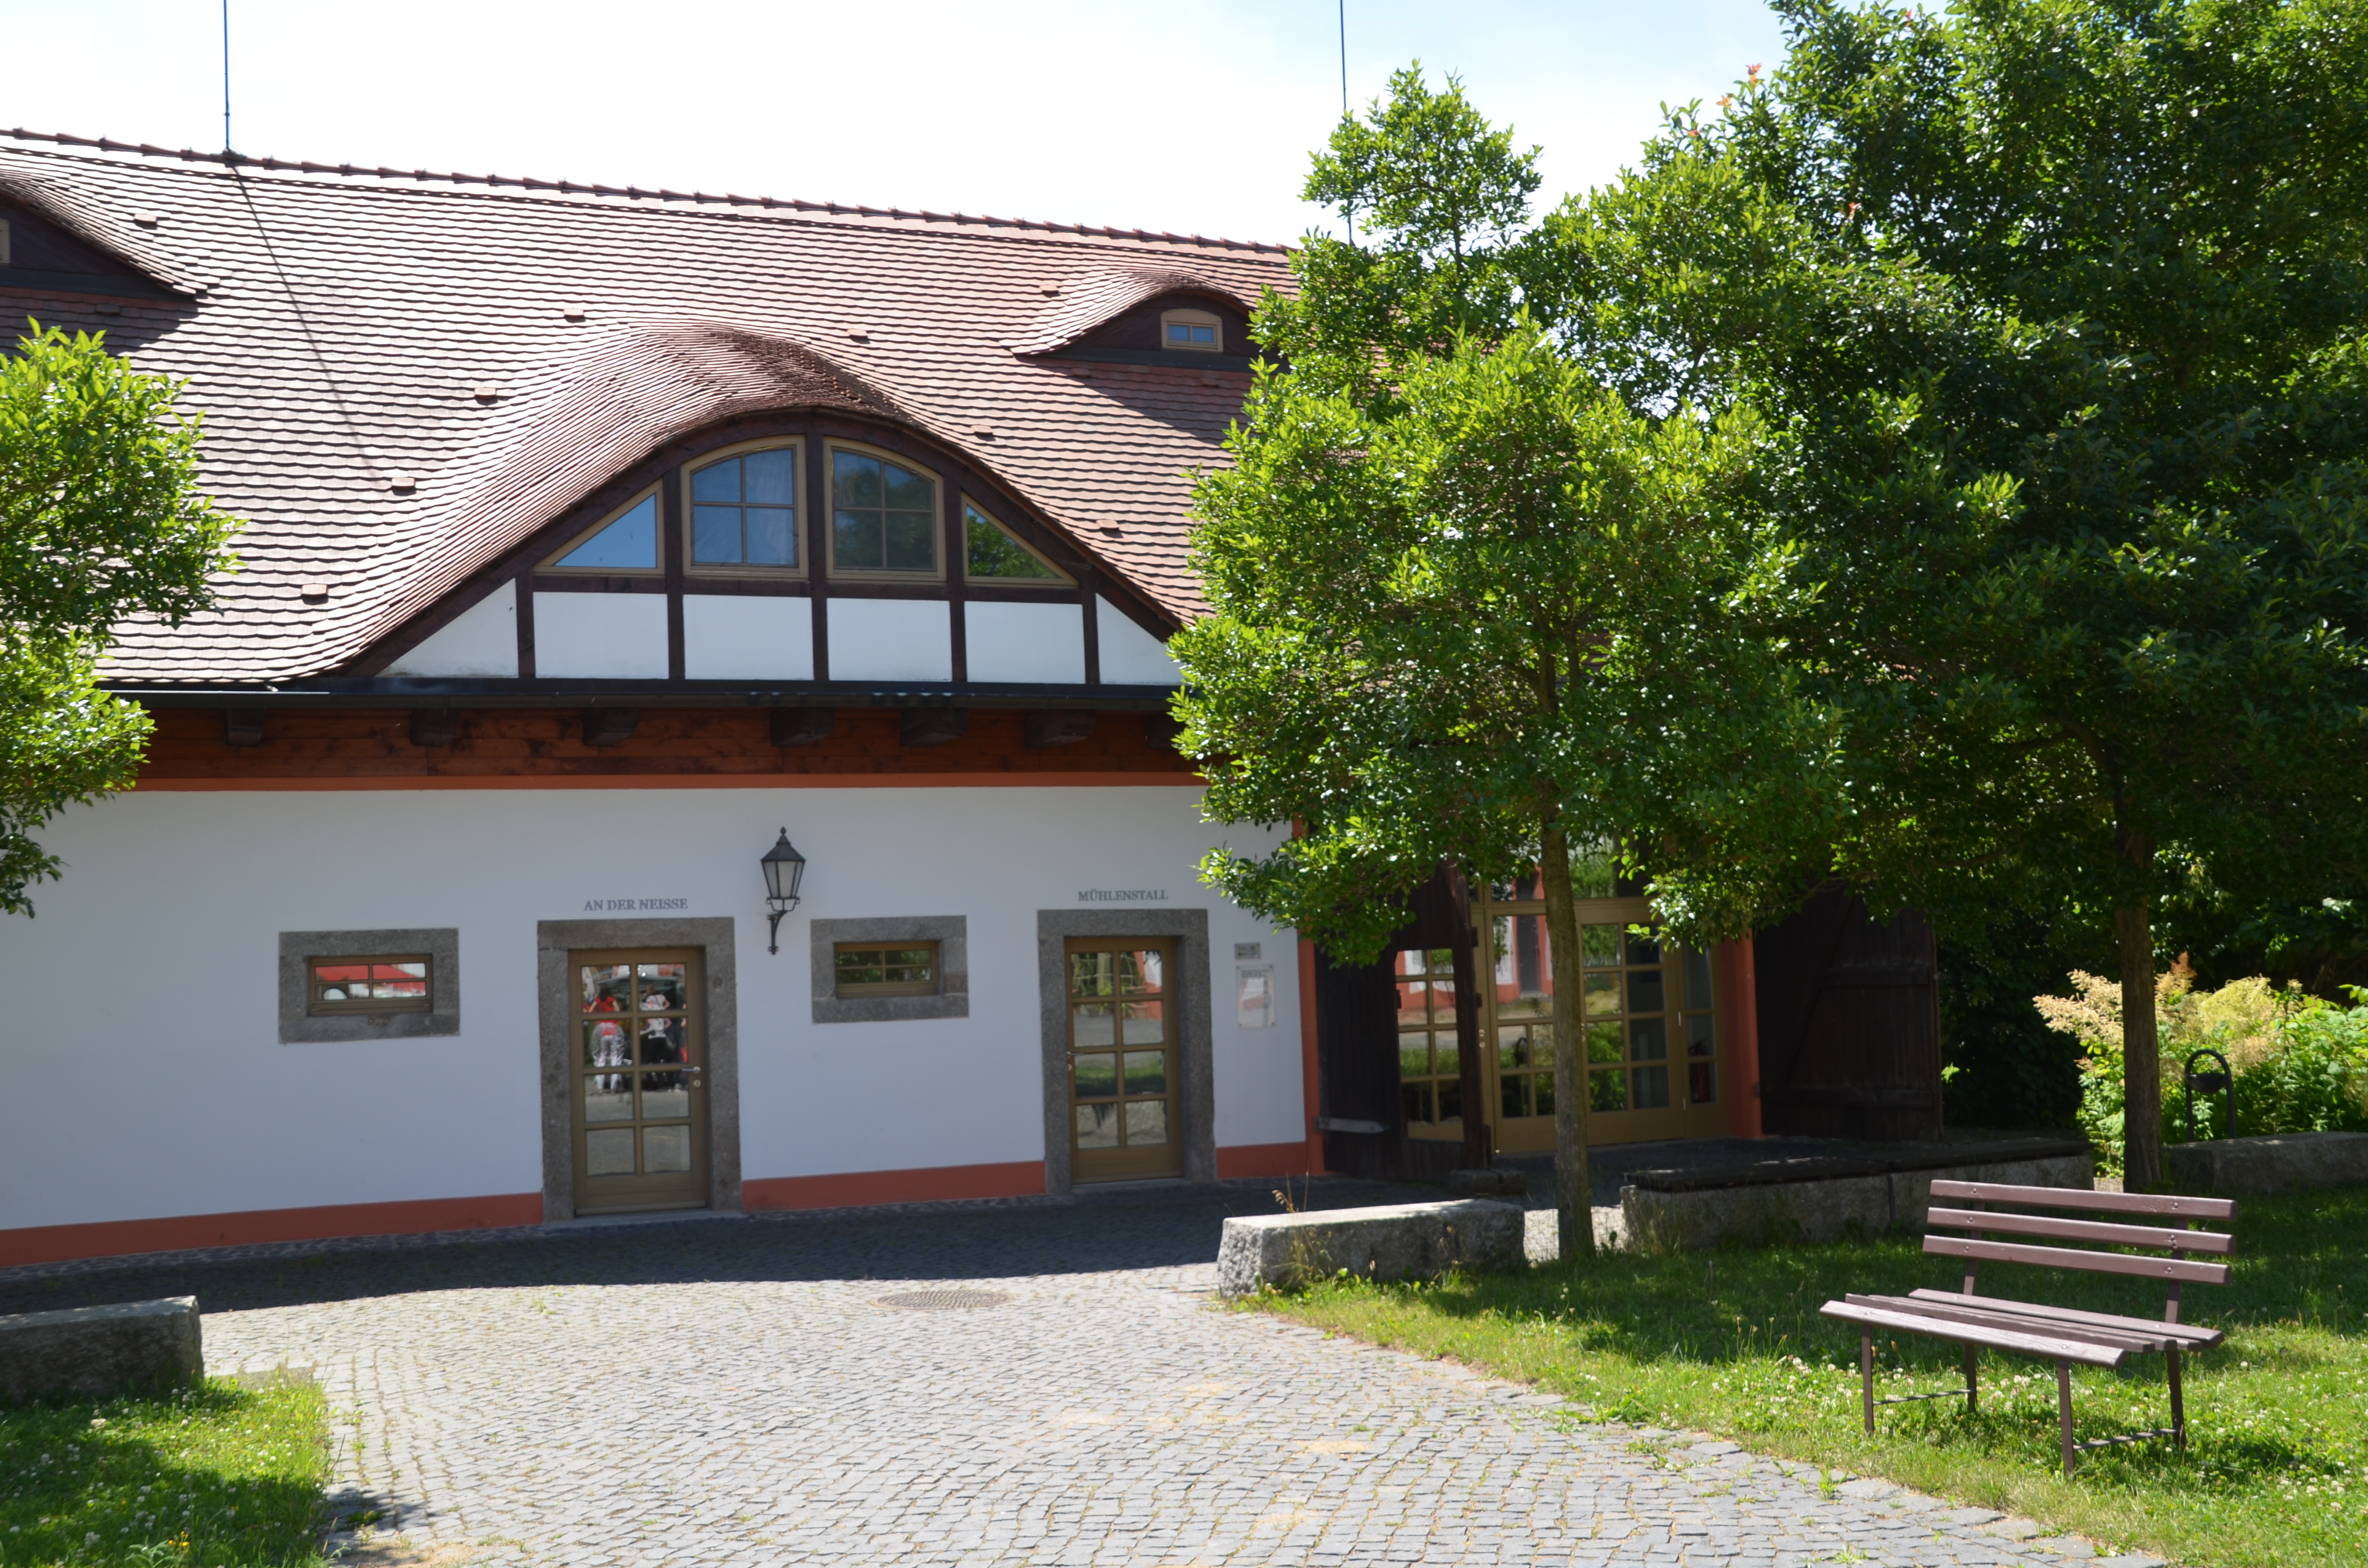 Bild 3 Internationales Begegnungszentrum St. Marienthal in Ostritz